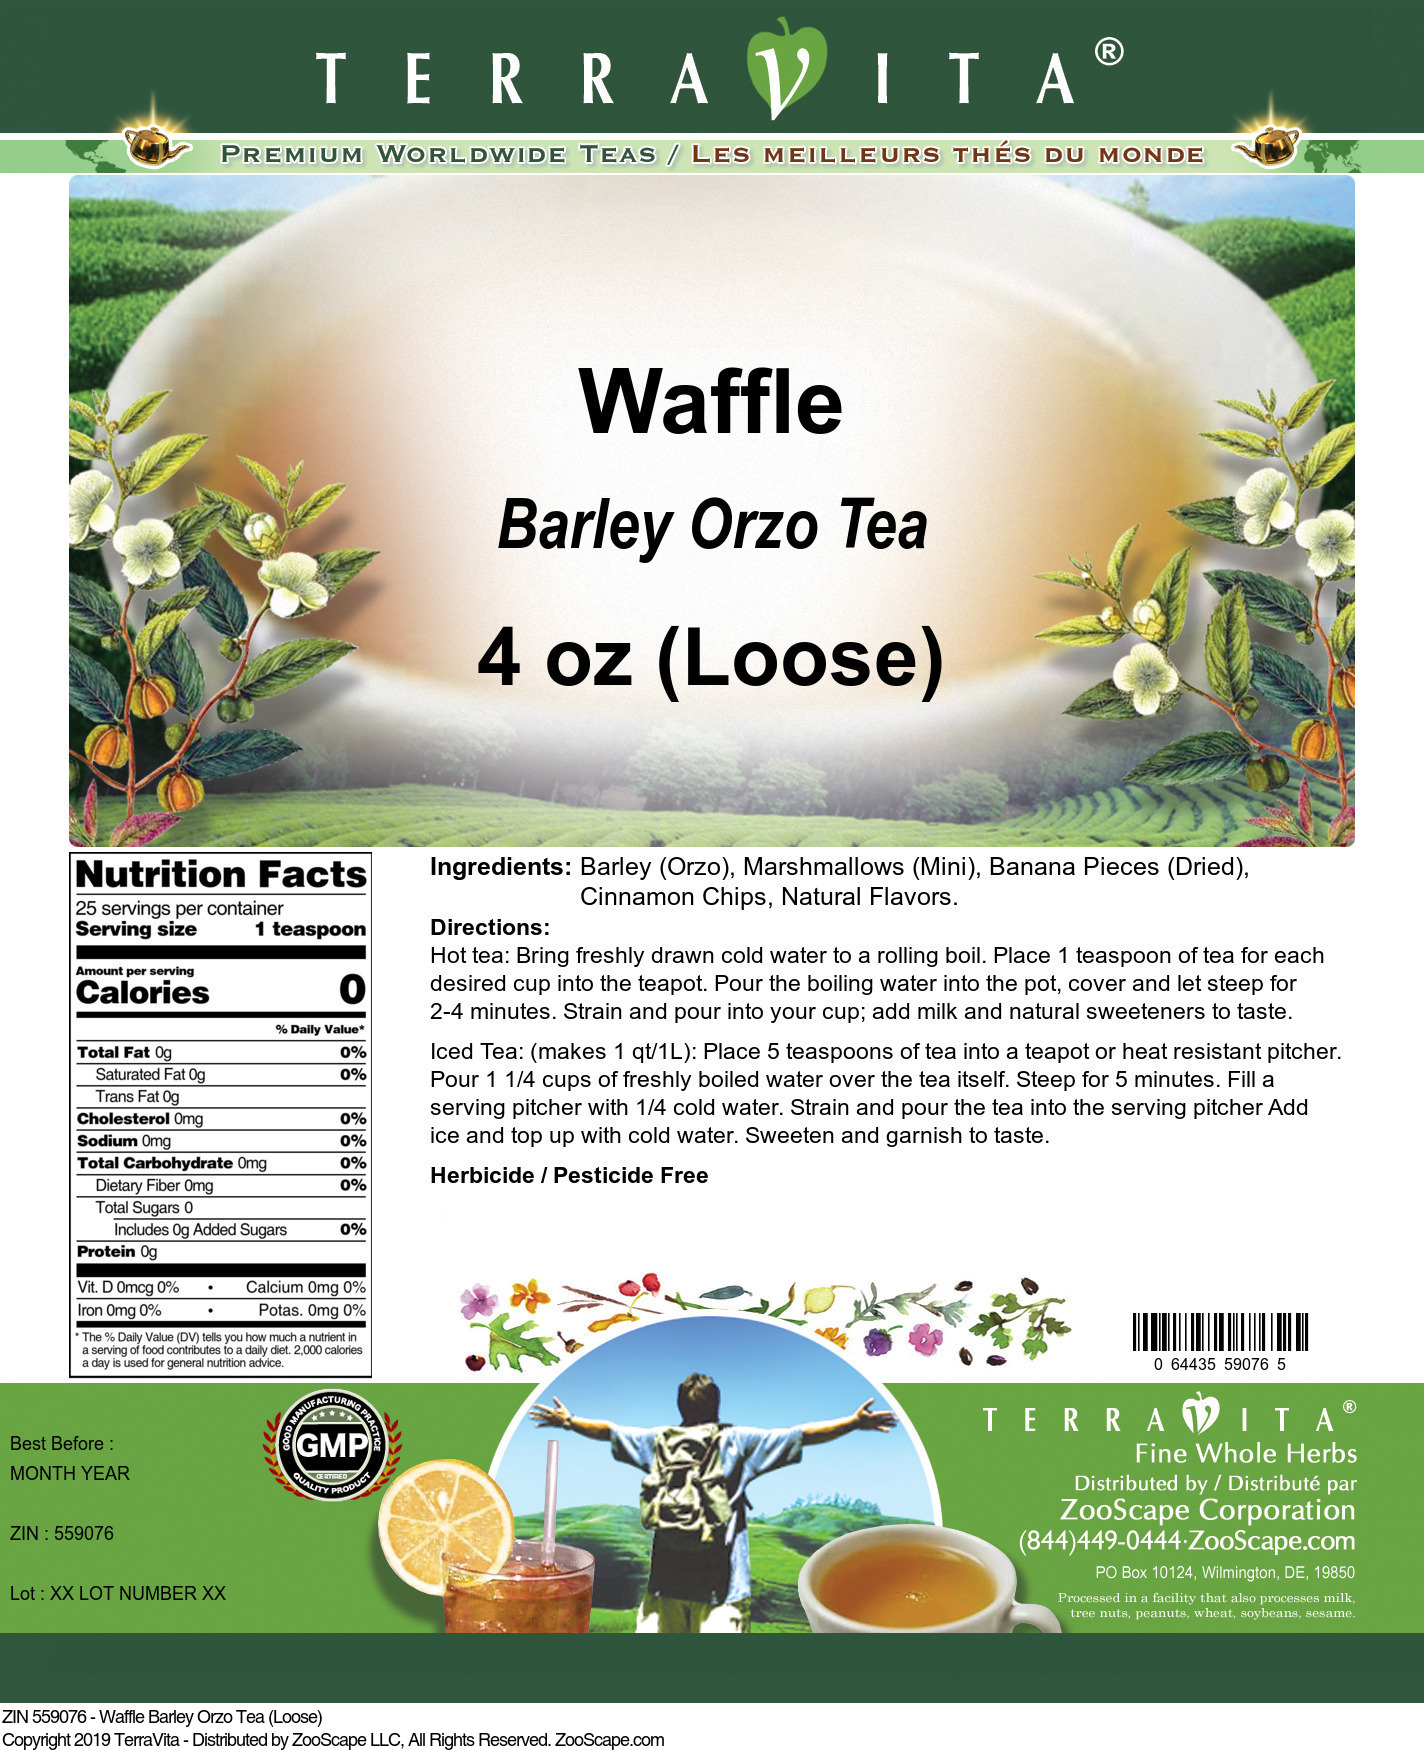 Waffle Barley Orzo Tea (Loose) - Label